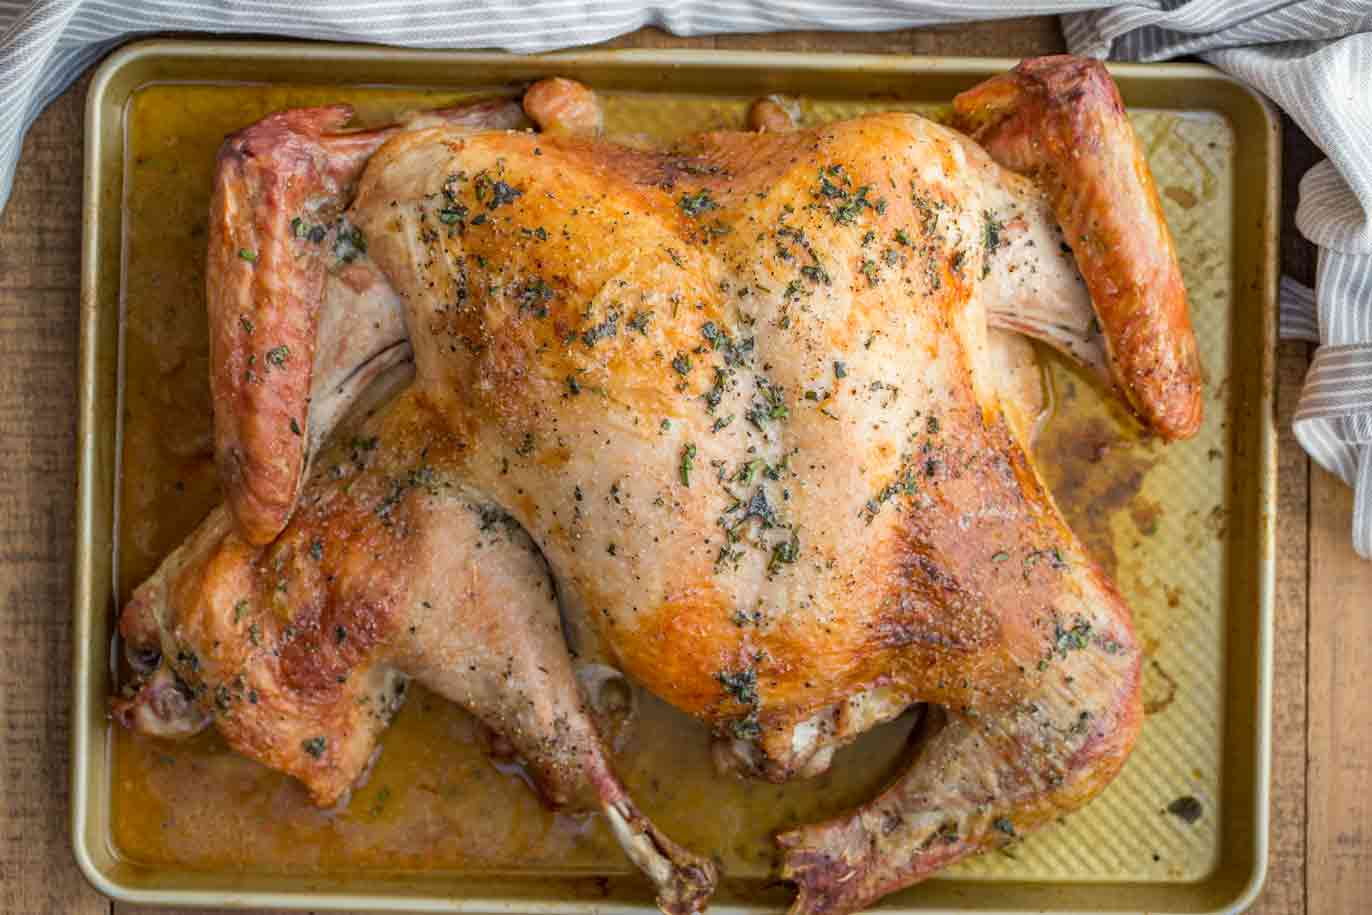 Spatchcock Turkey